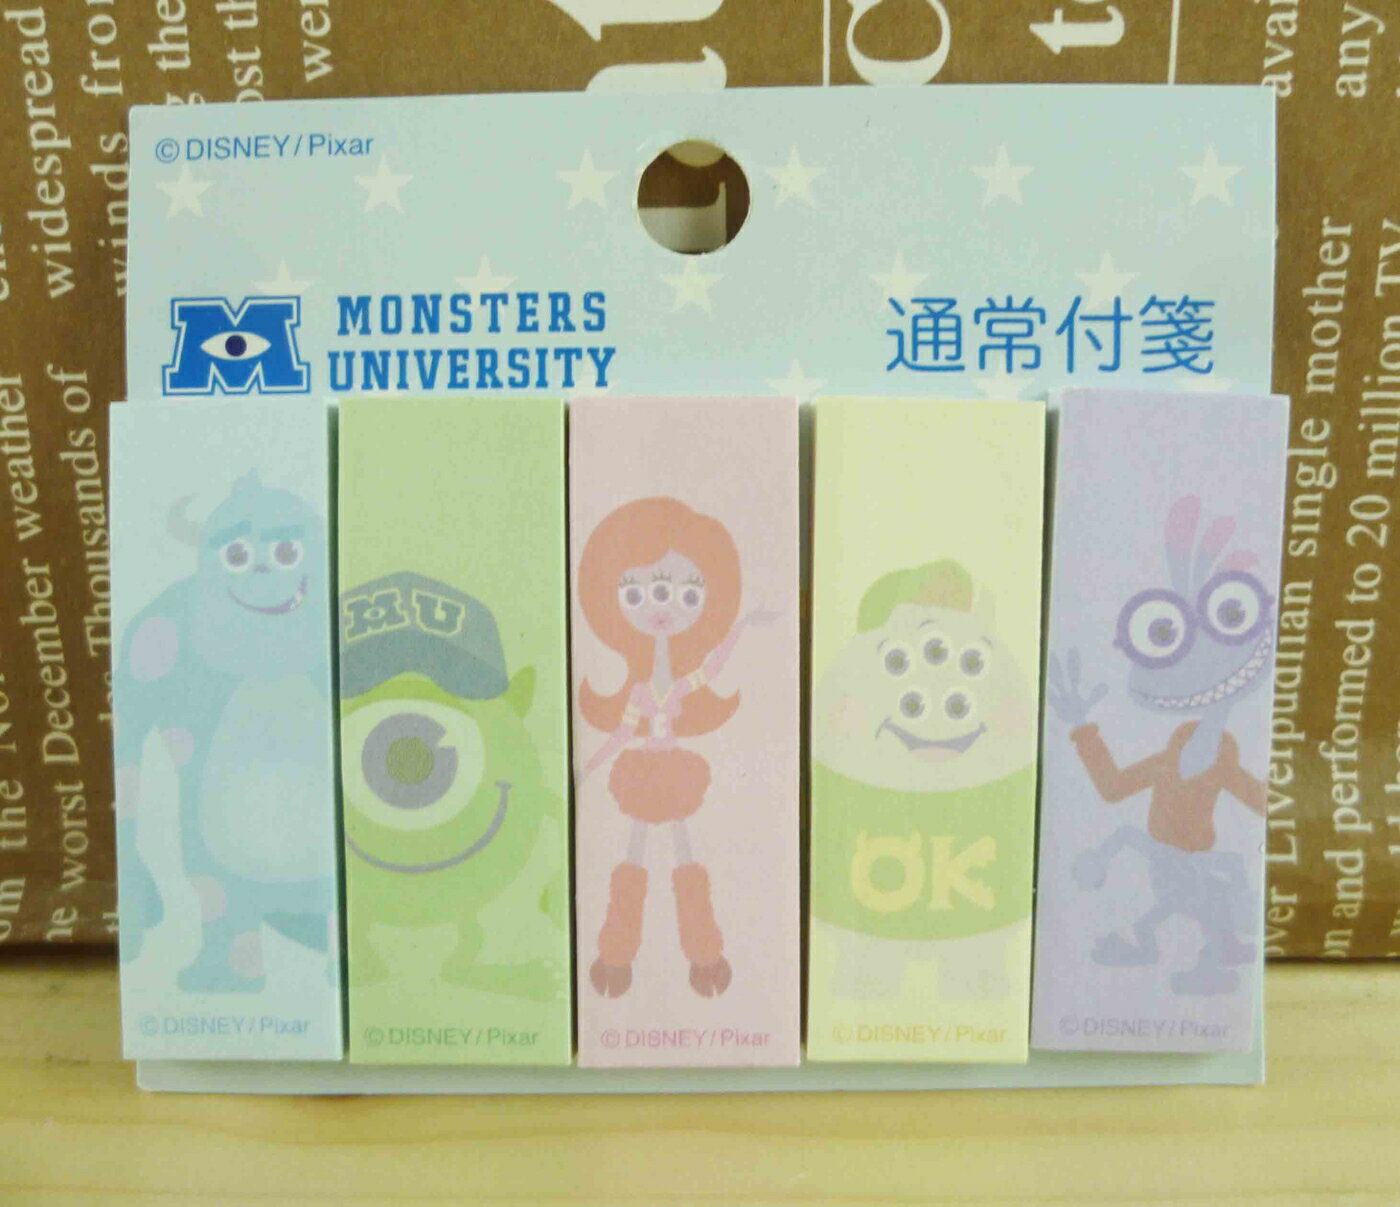 【震撼精品百貨】Monsters University 怪獸大學 便利貼-彩色底 震撼日式精品百貨